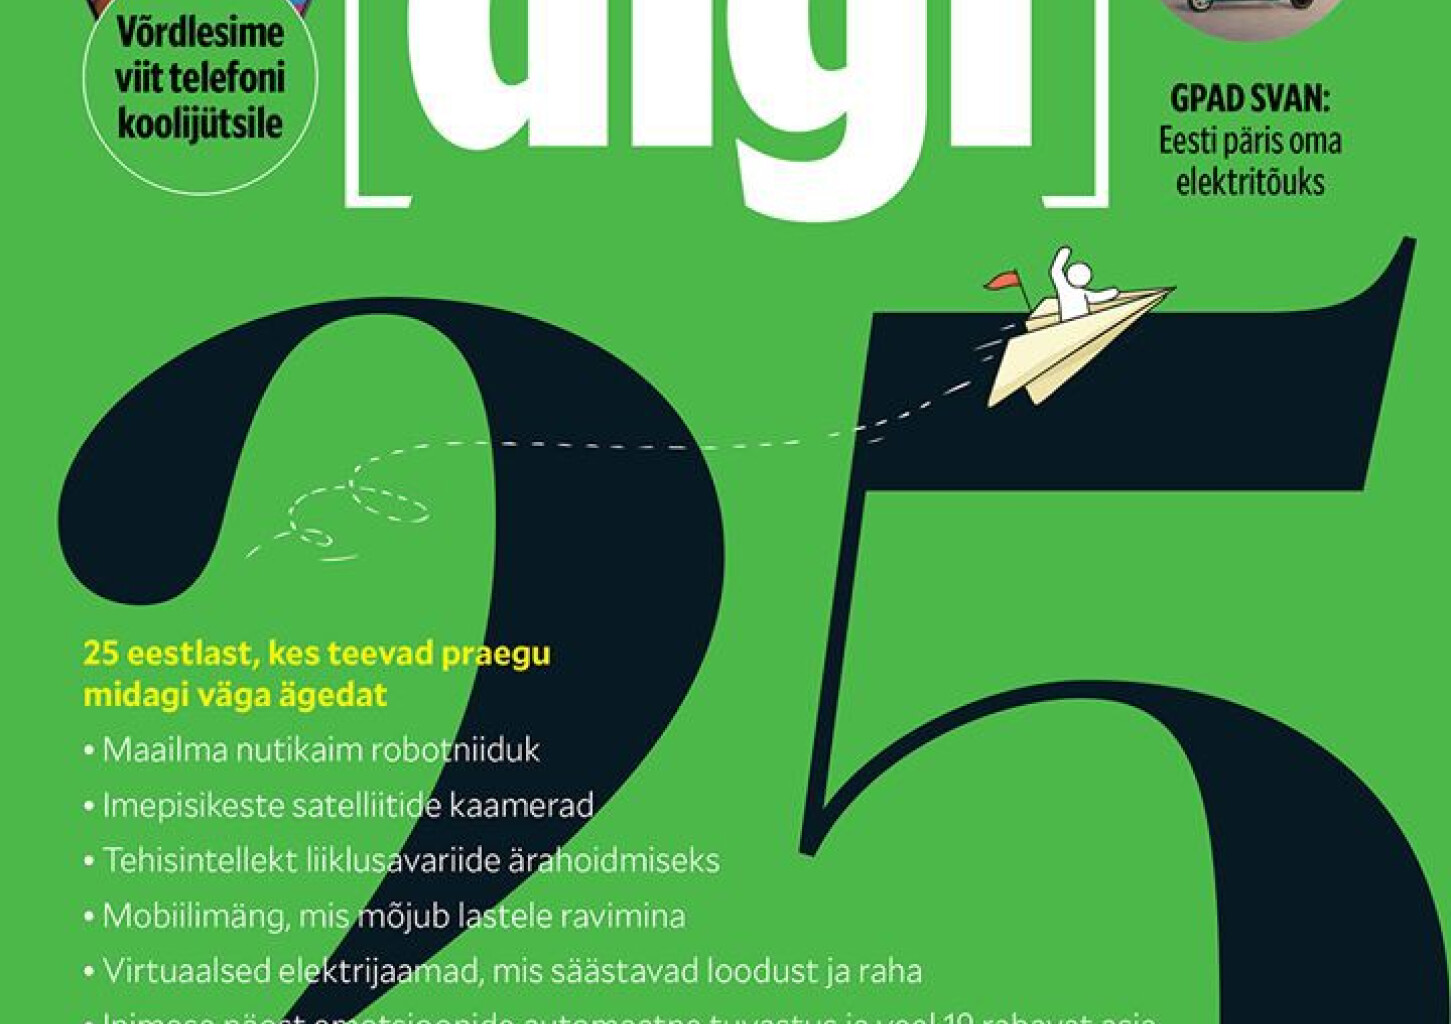 Журнал DIGI - заказ на 6 месяцев (на эстонском языке)